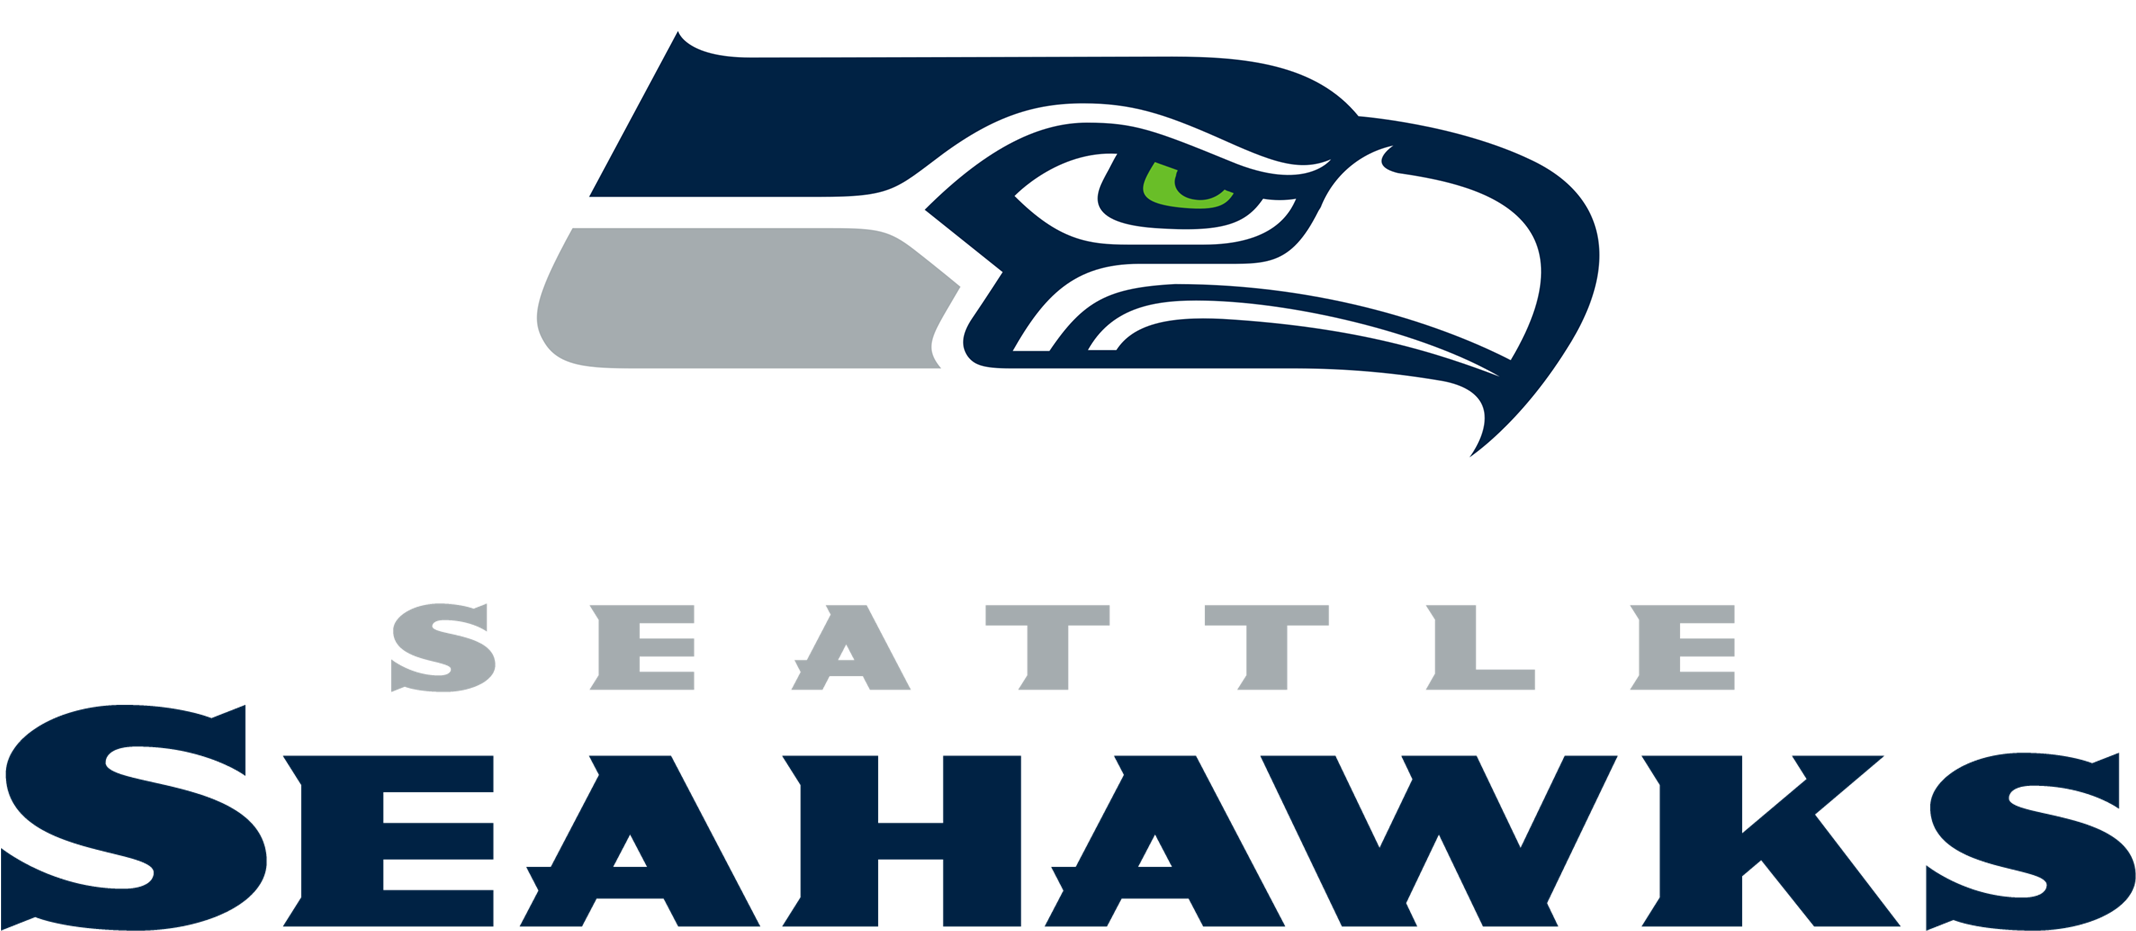 Seattle Seahawks Football Logo - Seattle Seahawks Logo (2400x1314)